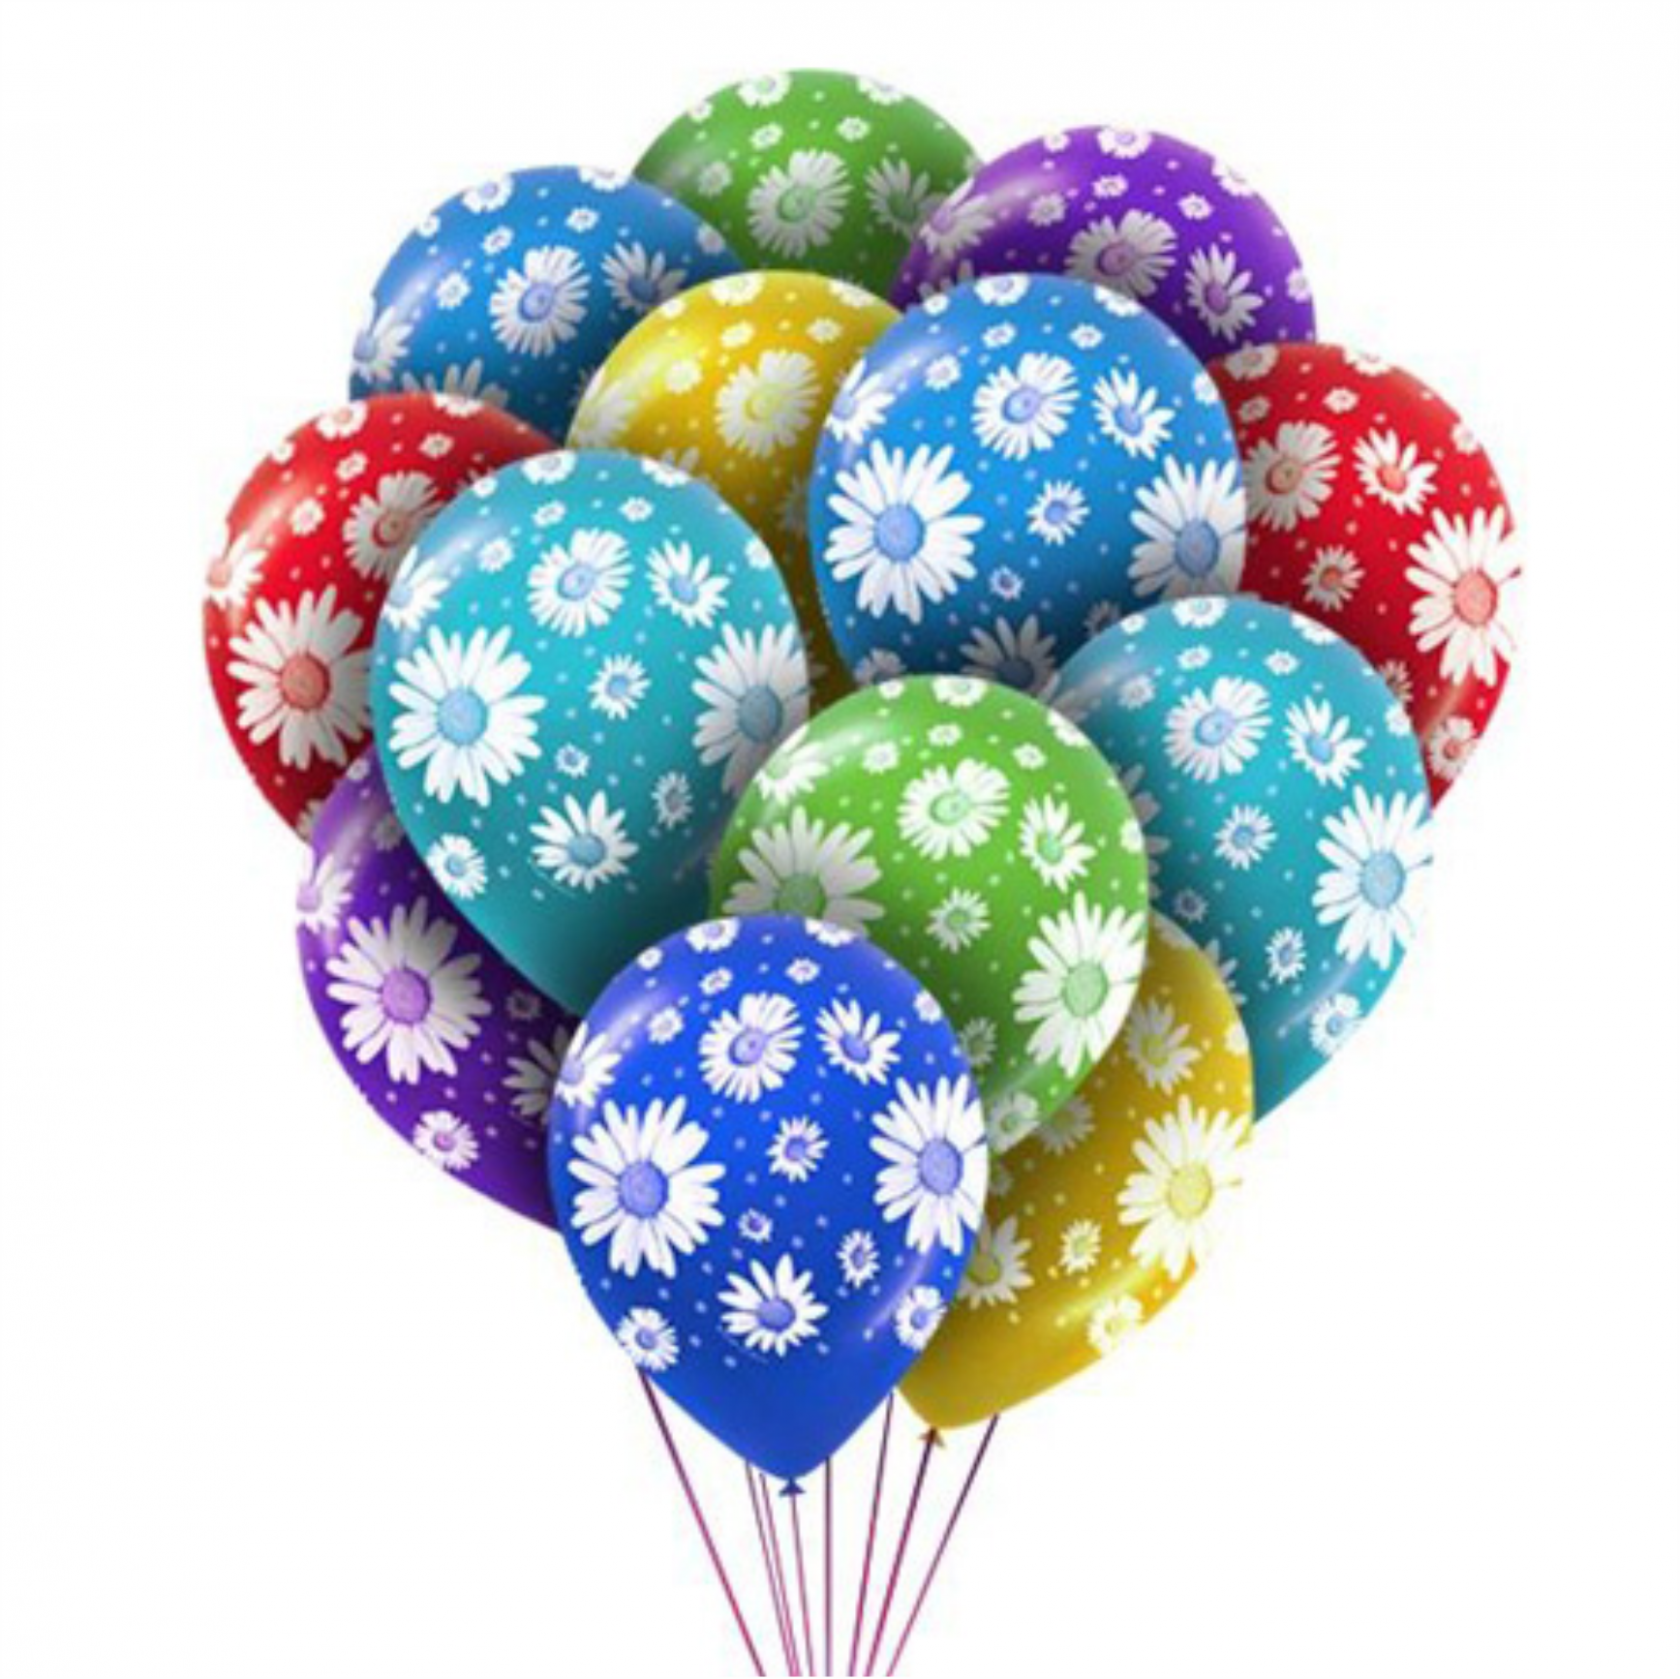 Купить шары в москве недорого с доставкой. Цветные шары. Воздушные шары. Разноцветные шарики воздушные. Шары надувные.